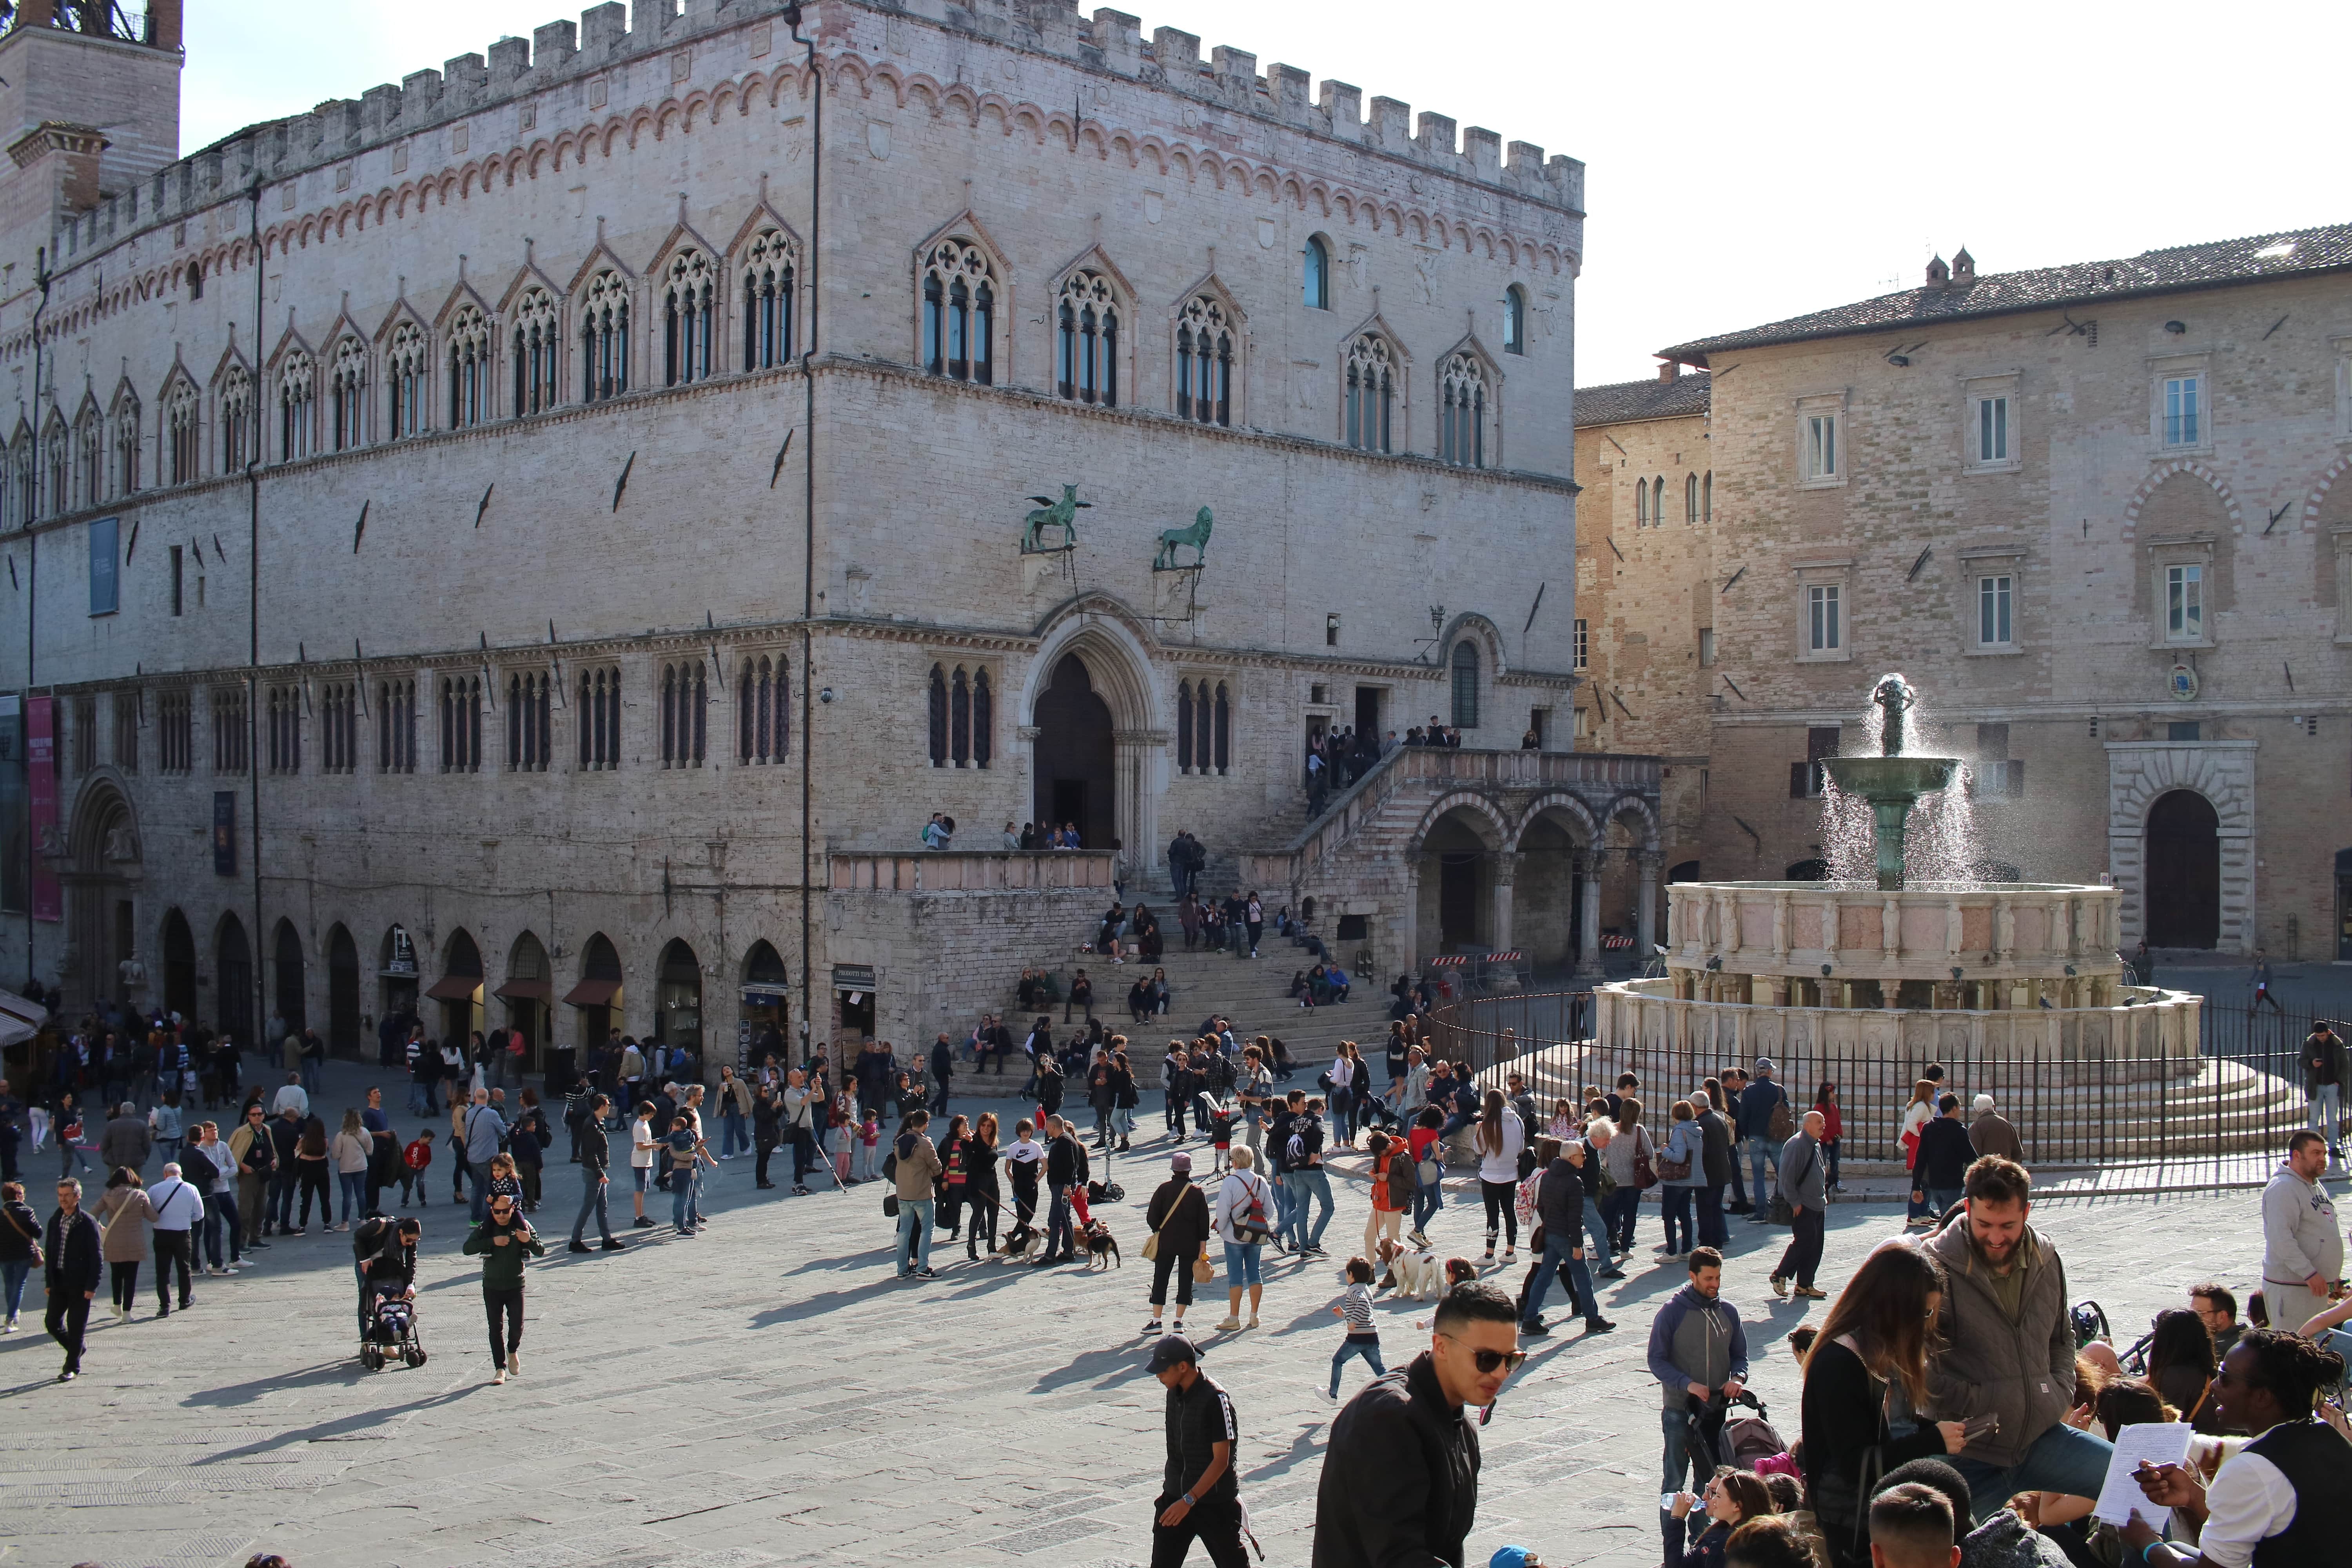 Cosa vedere a Perugia in un giorno: info utili per organizzare una gita + aneddoto bonus